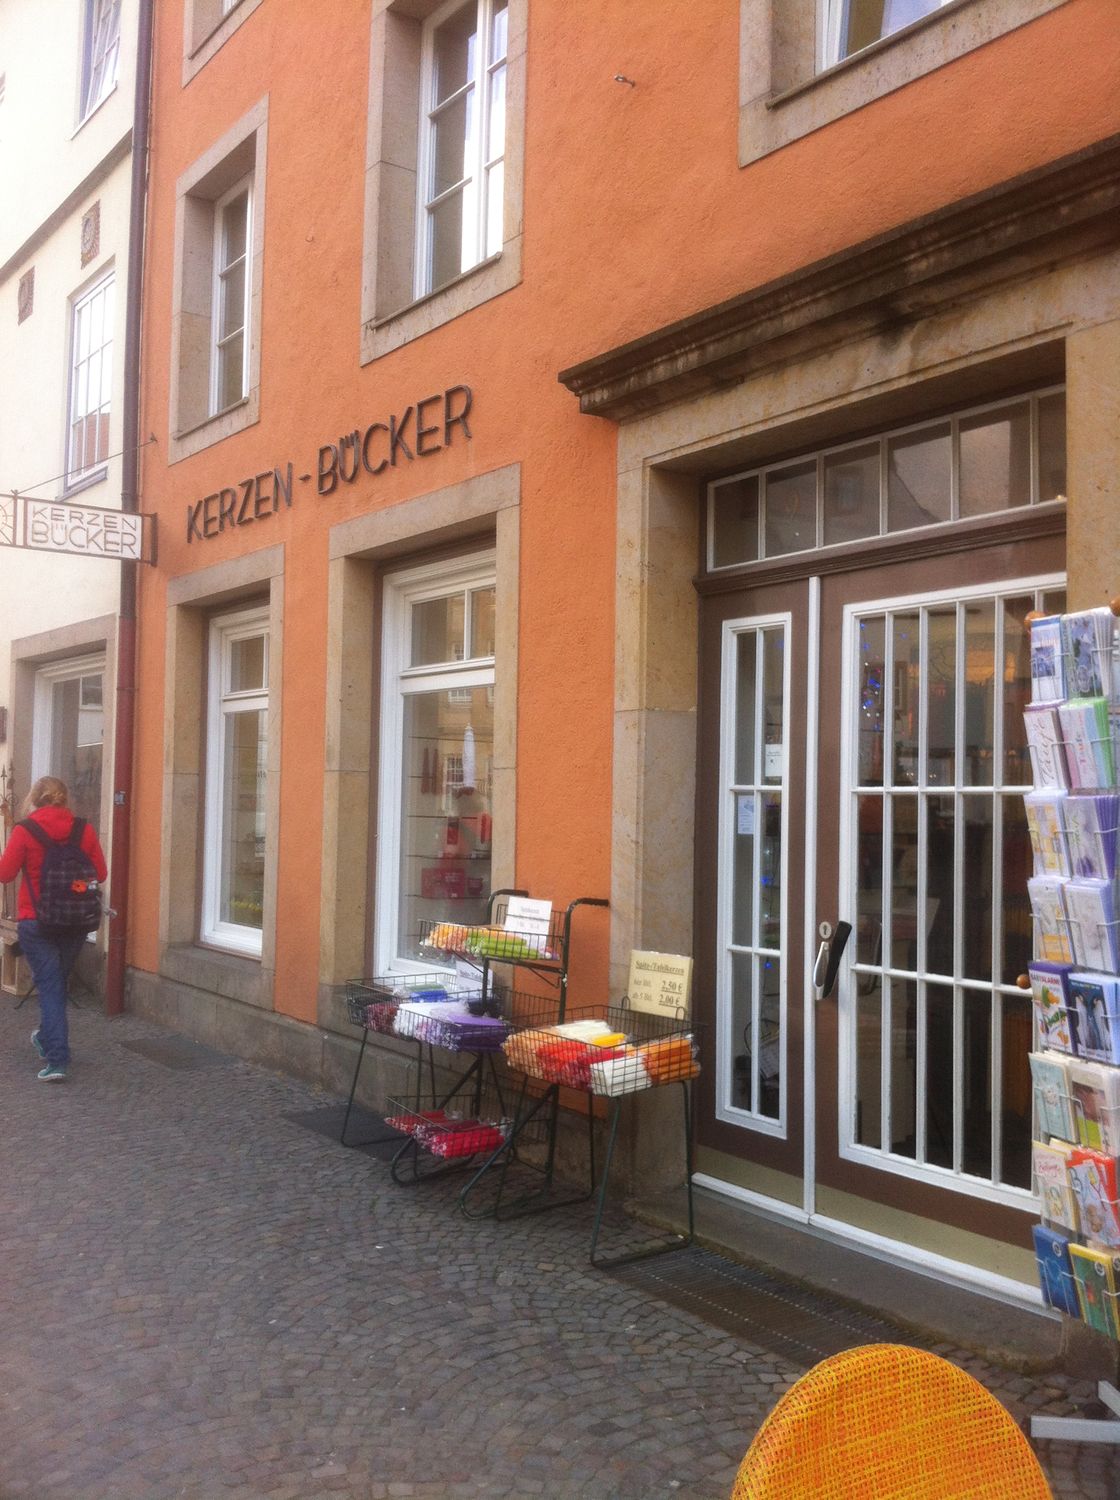 Kerzen Bücker GmbH - 4 Fotos - Osnabrück Innenstadt - Markt | golocal